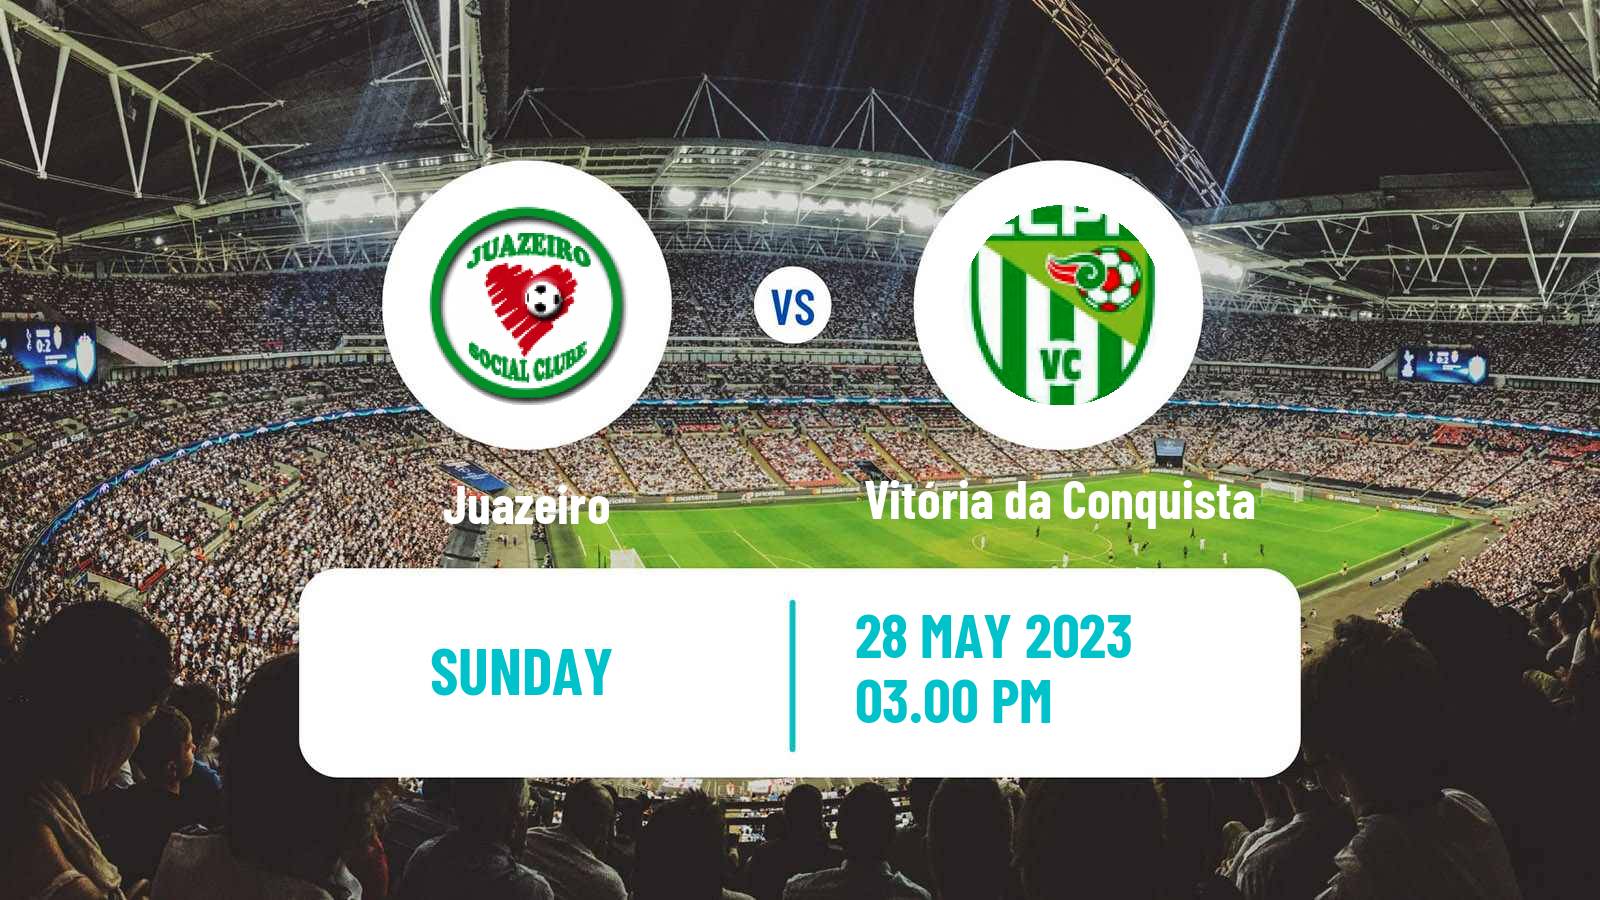 Soccer Brazilian Campeonato Baiano 2 Juazeiro - Vitória da Conquista